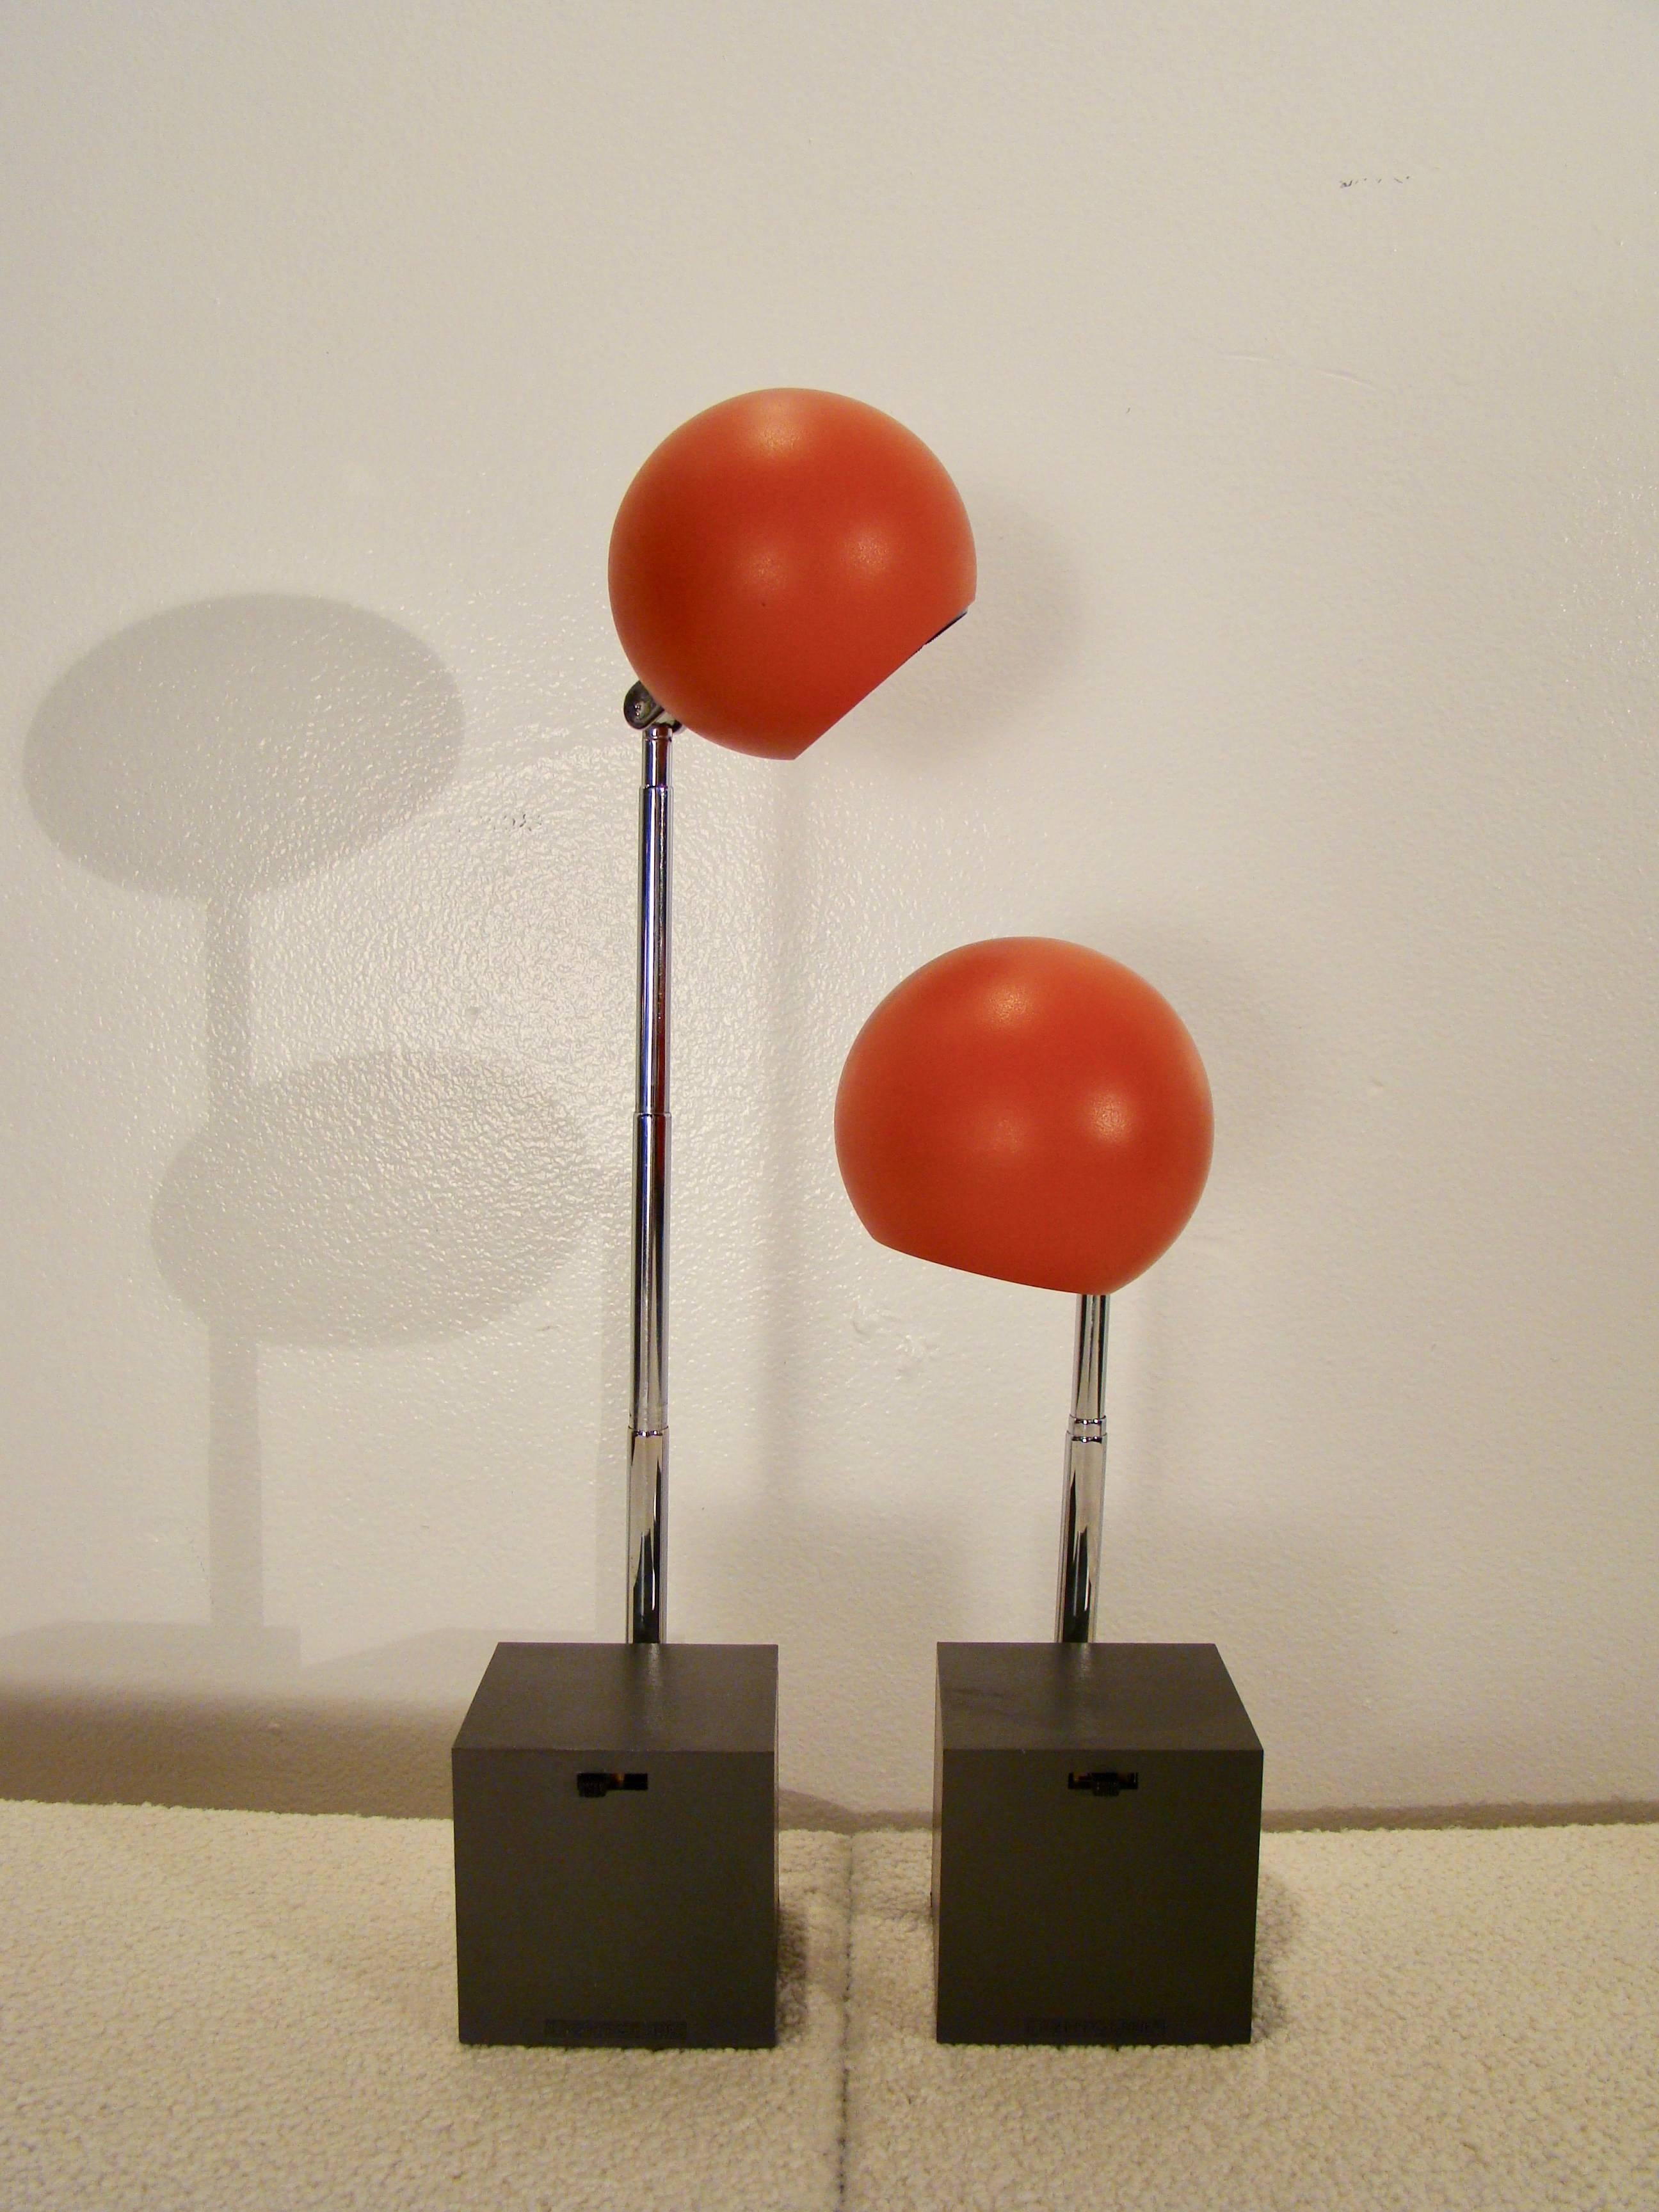 Mid-20th Century Michael Lax Lytegem Lightolie, Pair of Telescopic Eyeball Tasks Lamps in Box For Sale